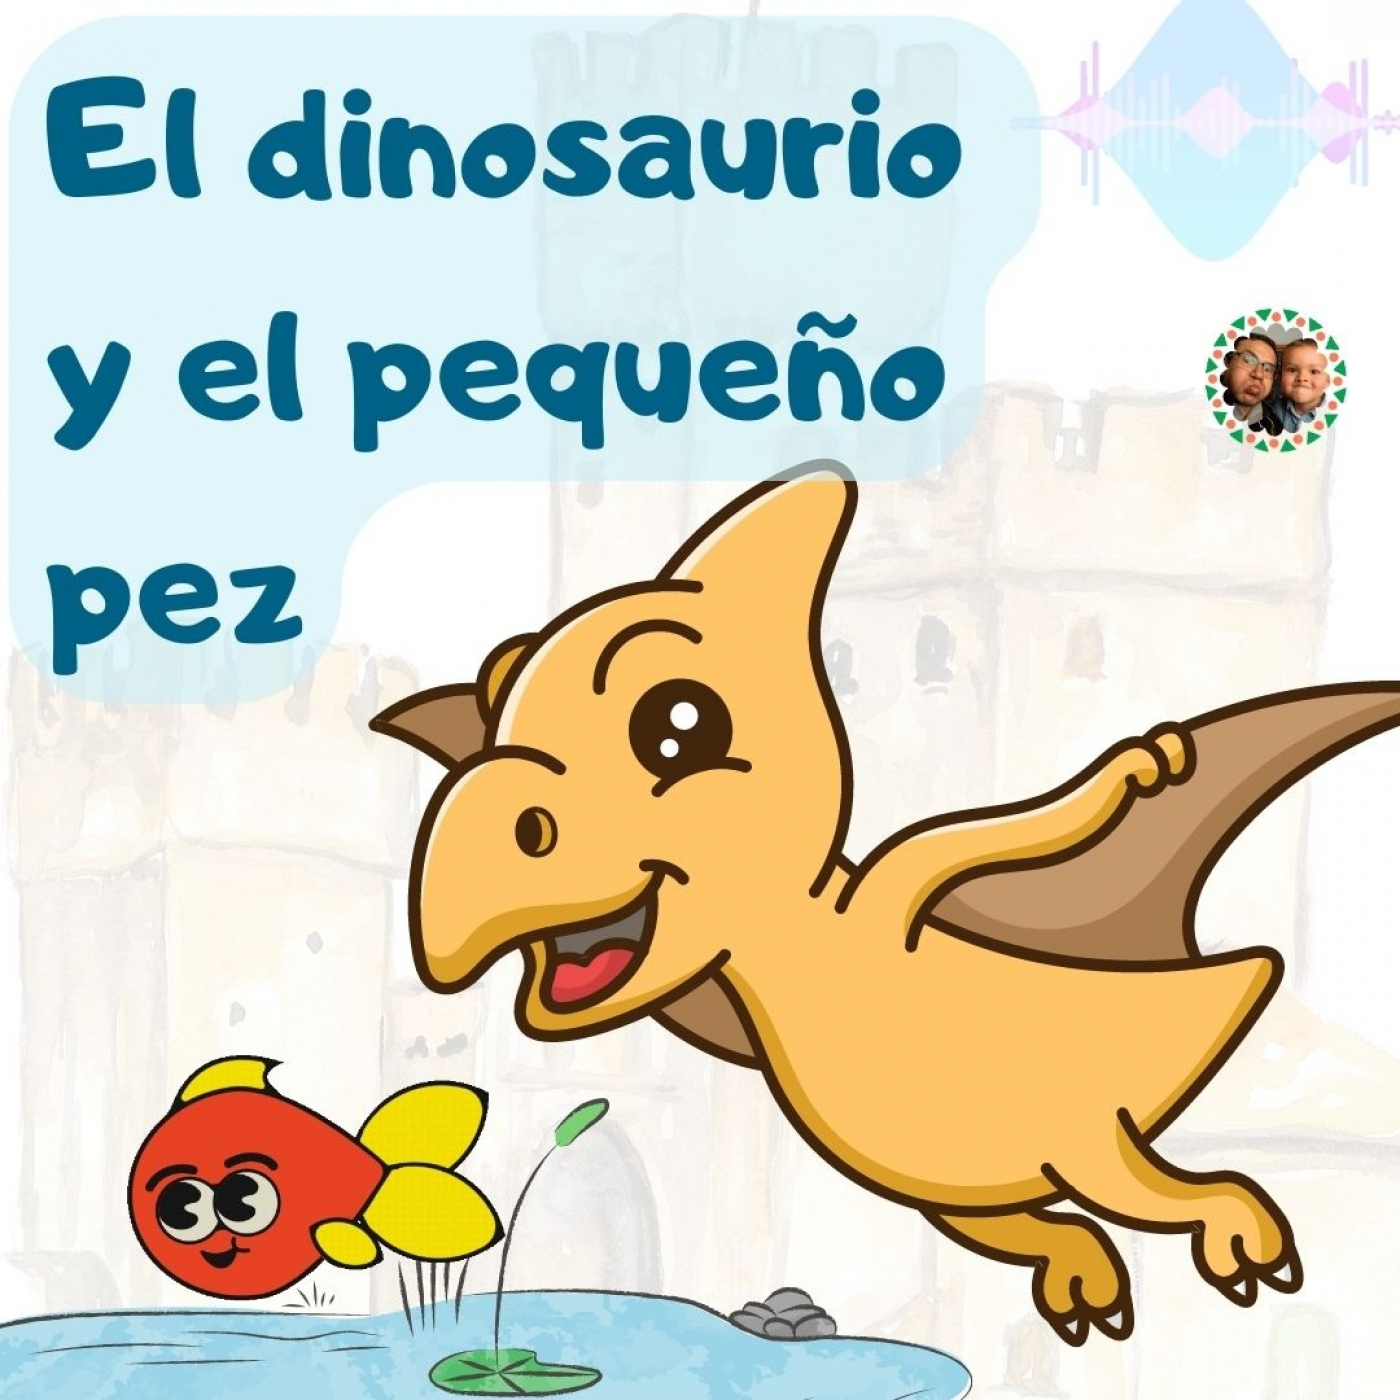 El dinosaurio y el pequeño pez